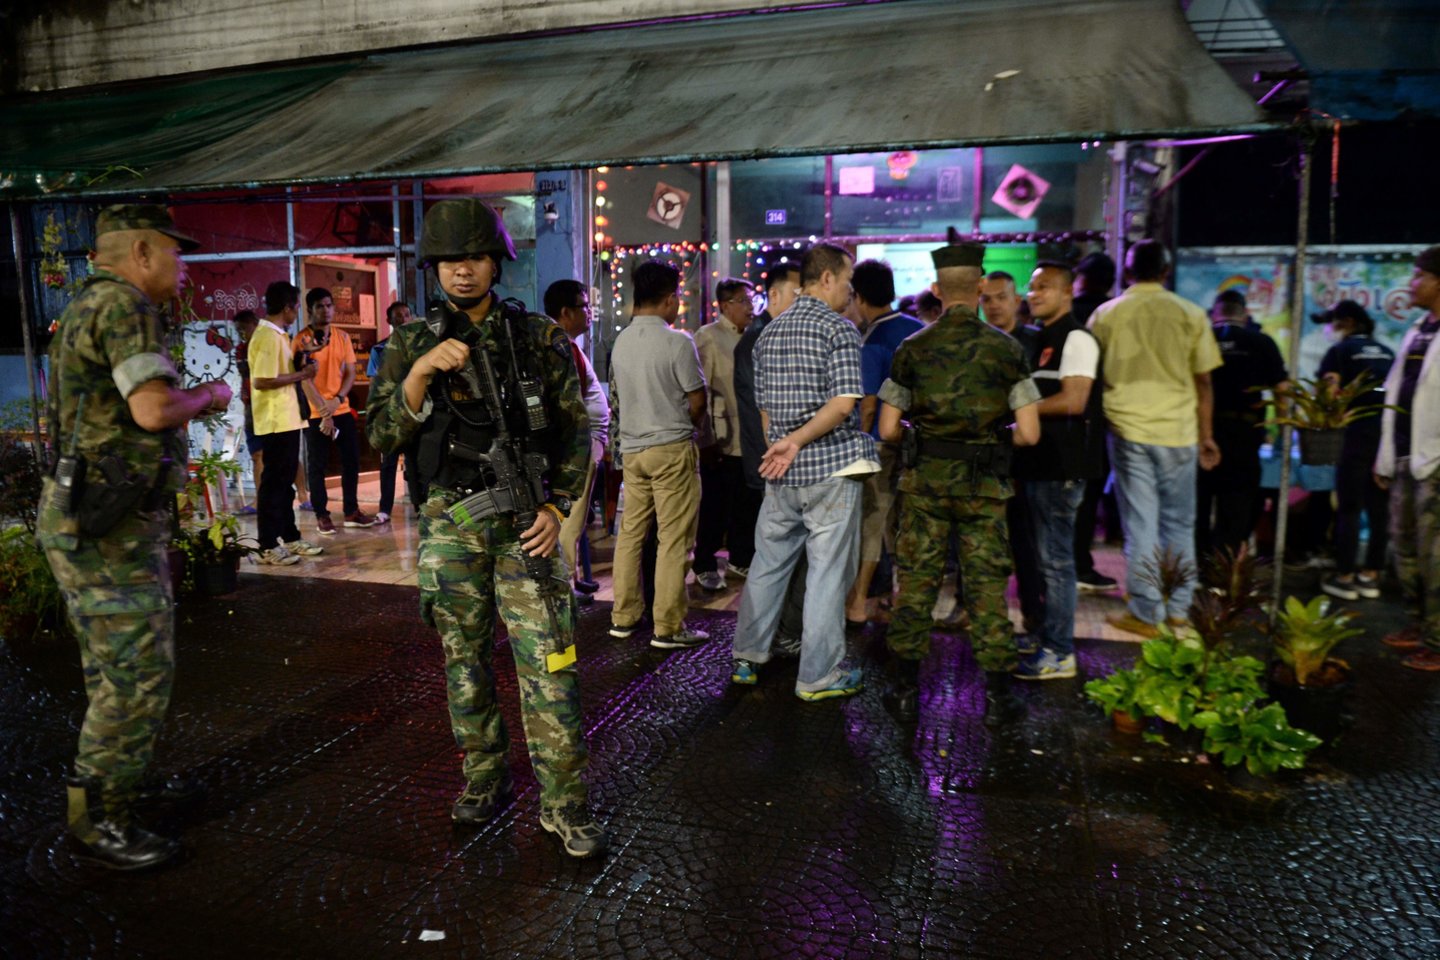  Bankoko smurtu liūdnai pagarsėjusioje dalyje trečiadienį po muštynių bare policininkas ne tarnybos metu nušovė turistą iš Prancūzijos, pranešė policija.<br> AFP/Scanpix nuotr.